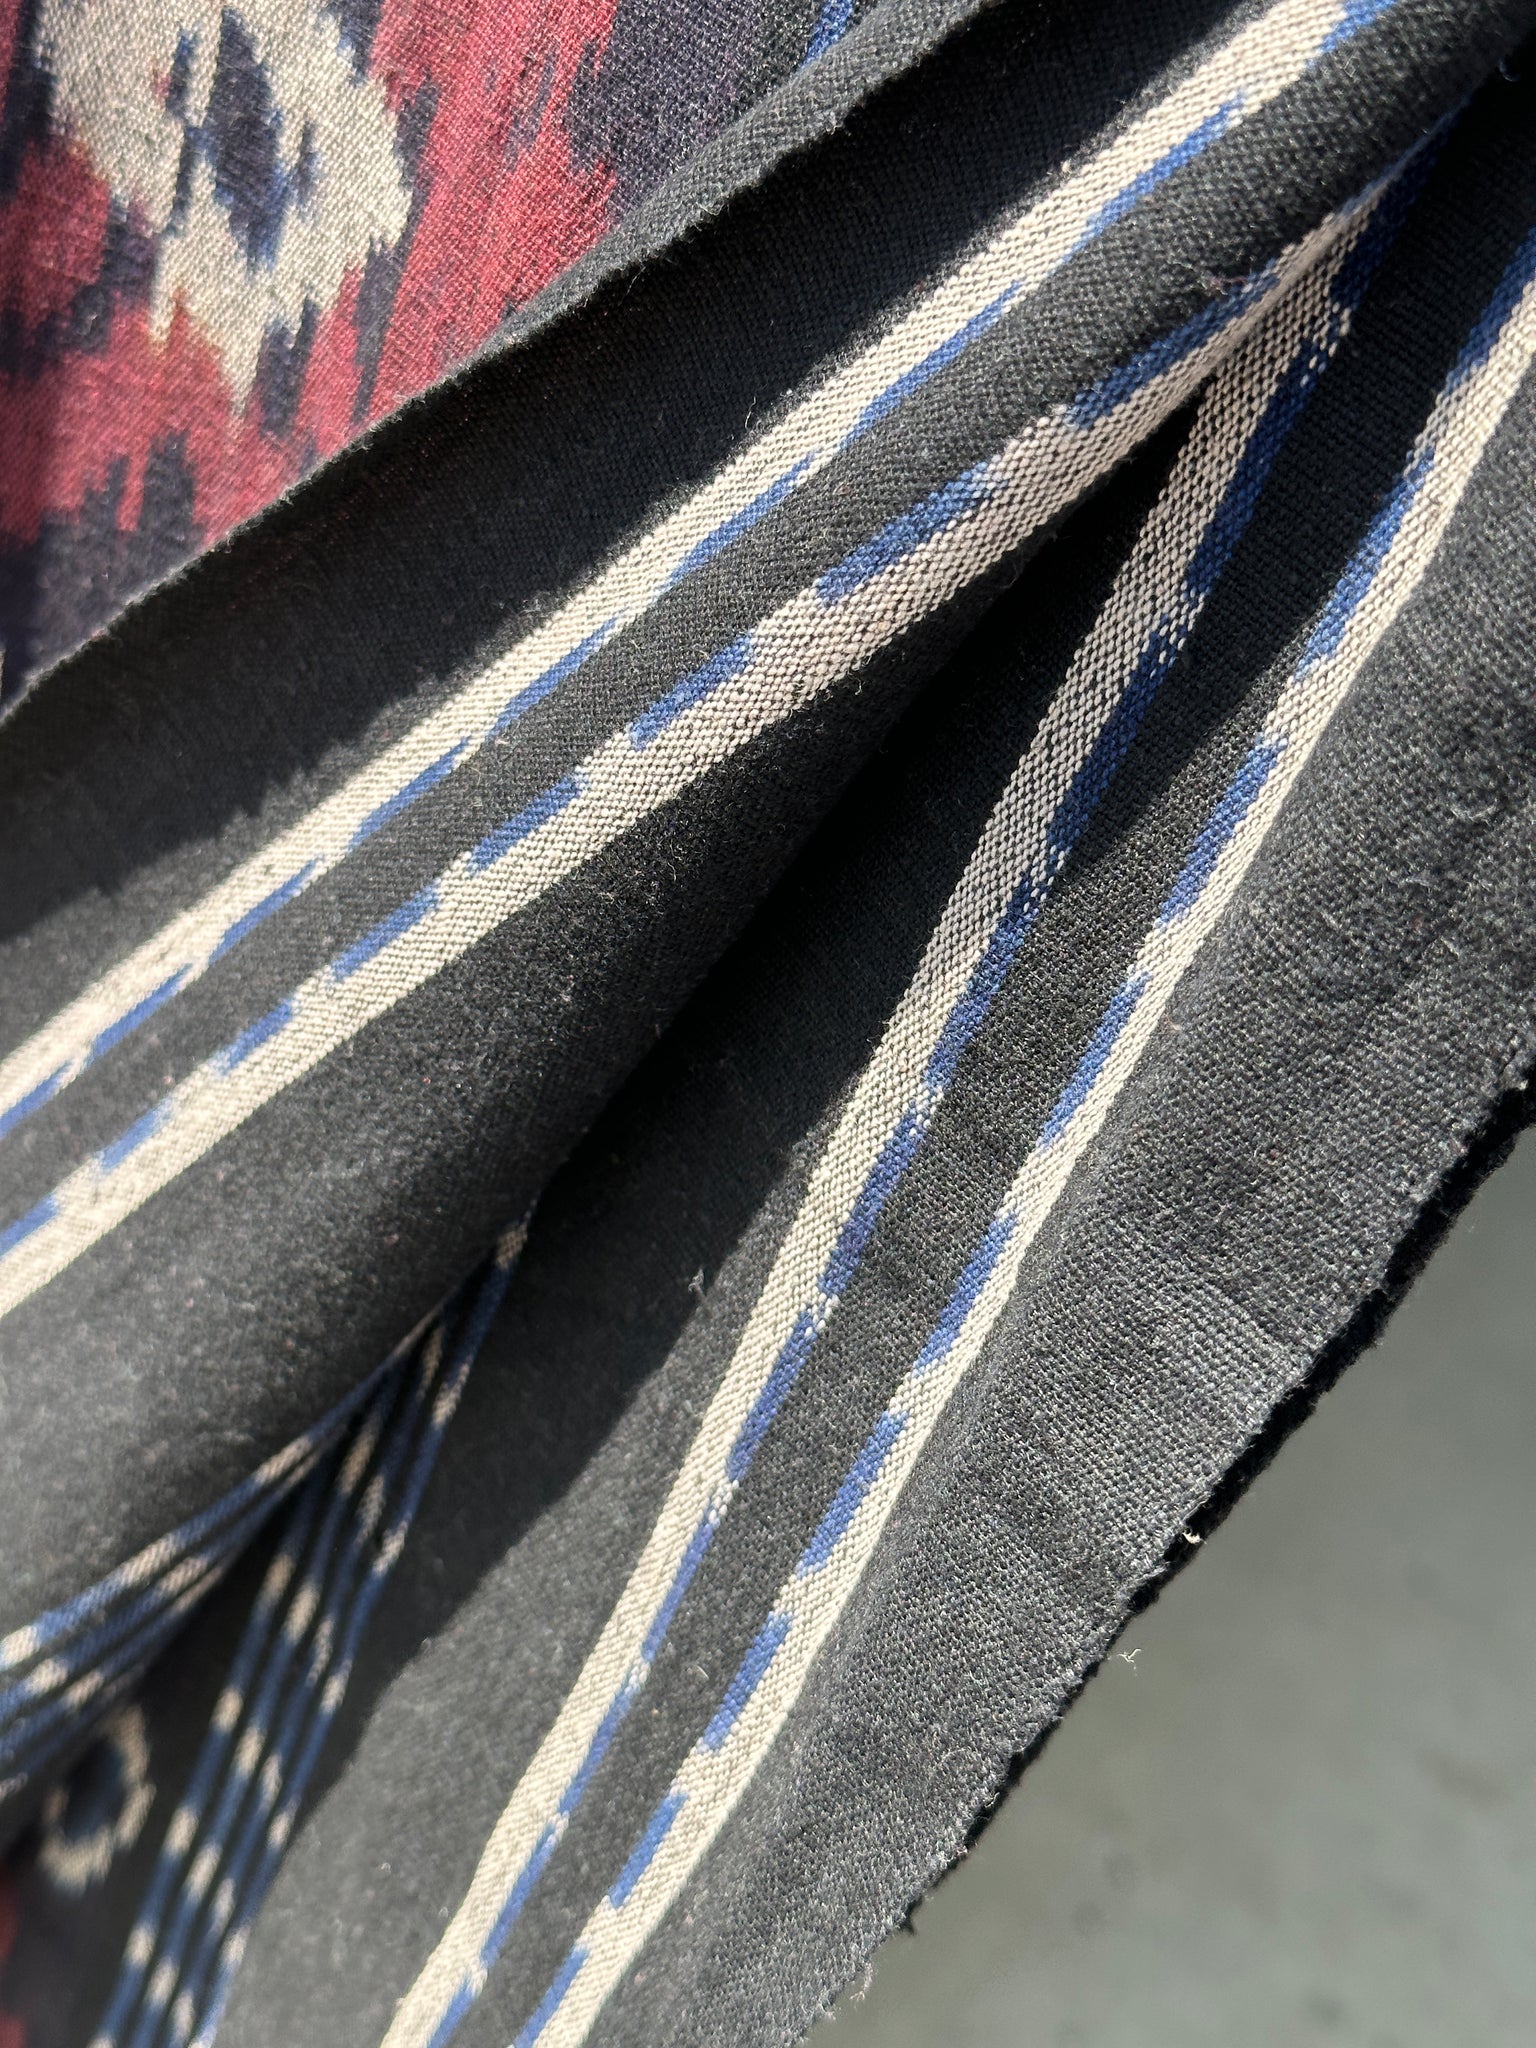 Grand ikat à frise de losanges et motifs floraux stylisés (noir, rouge, blanc) 2m35x1m15